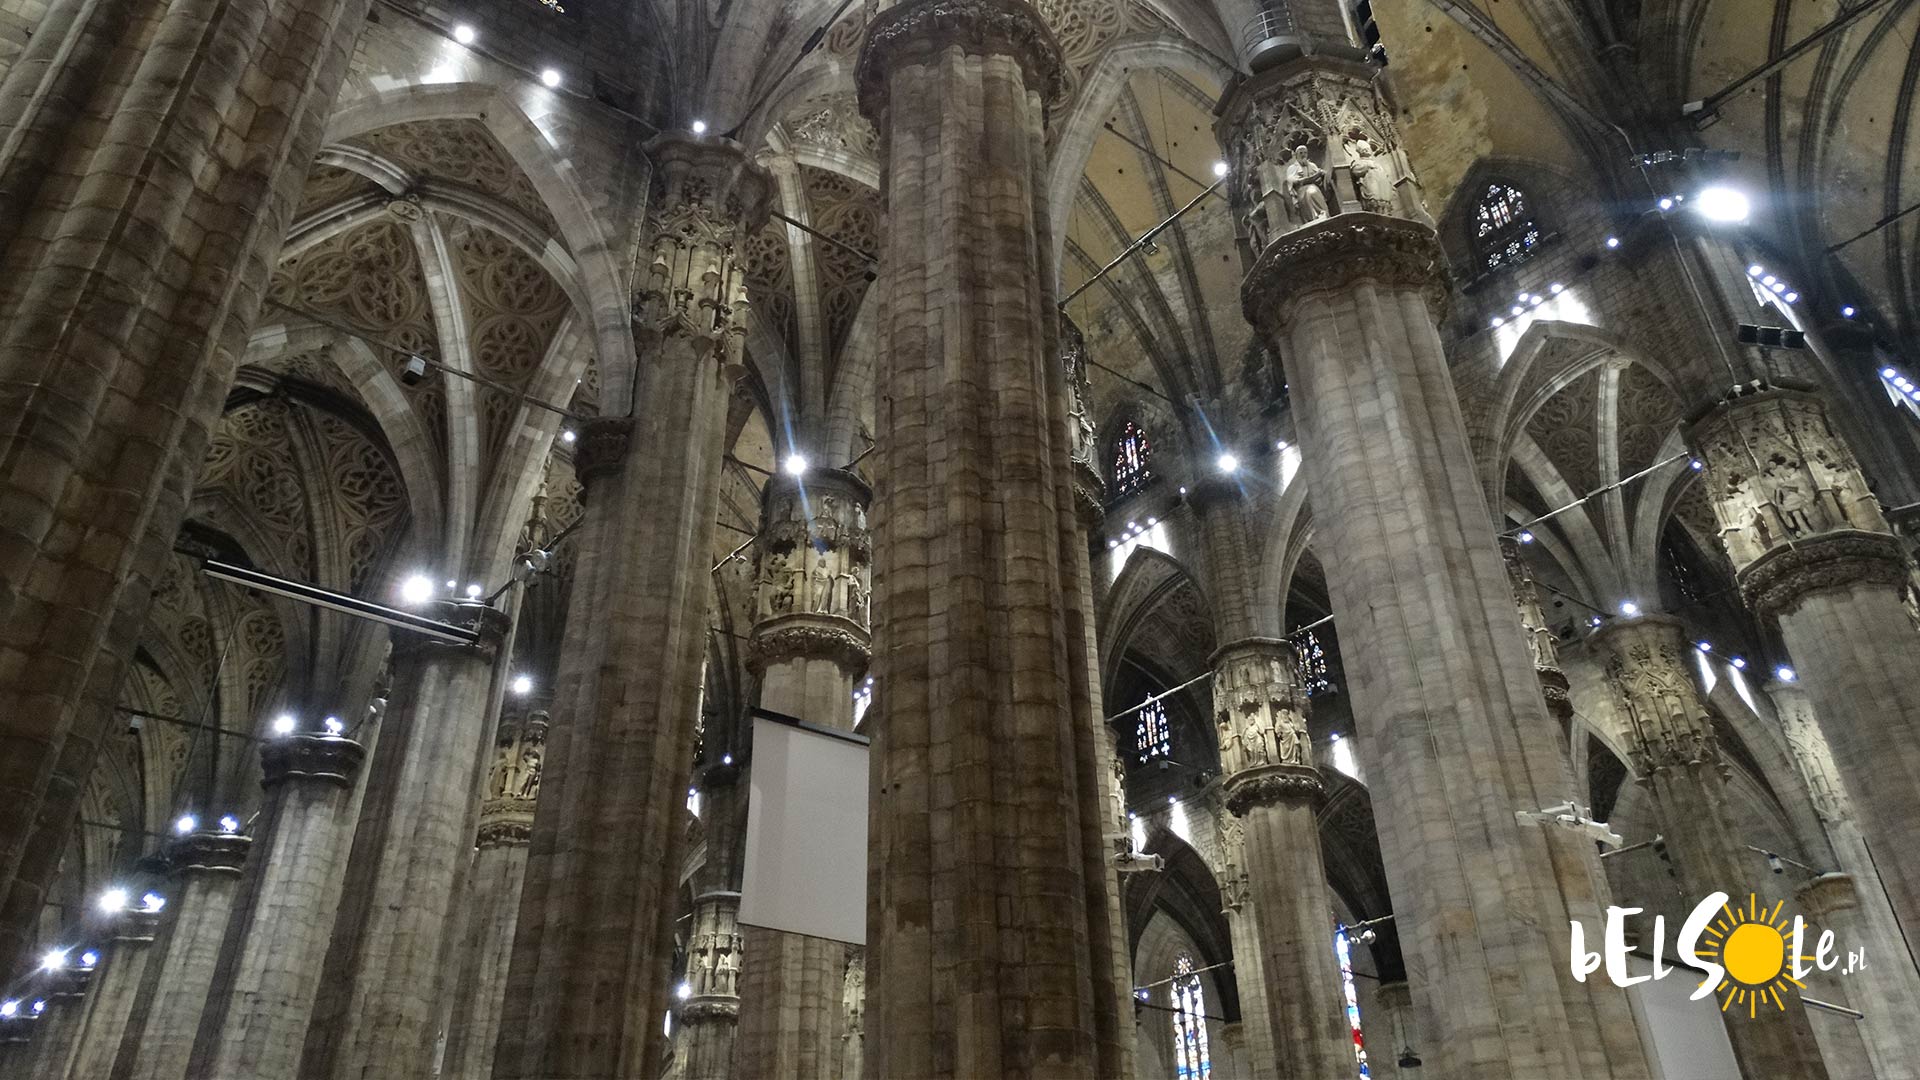 Pillars in Milan Cathedral